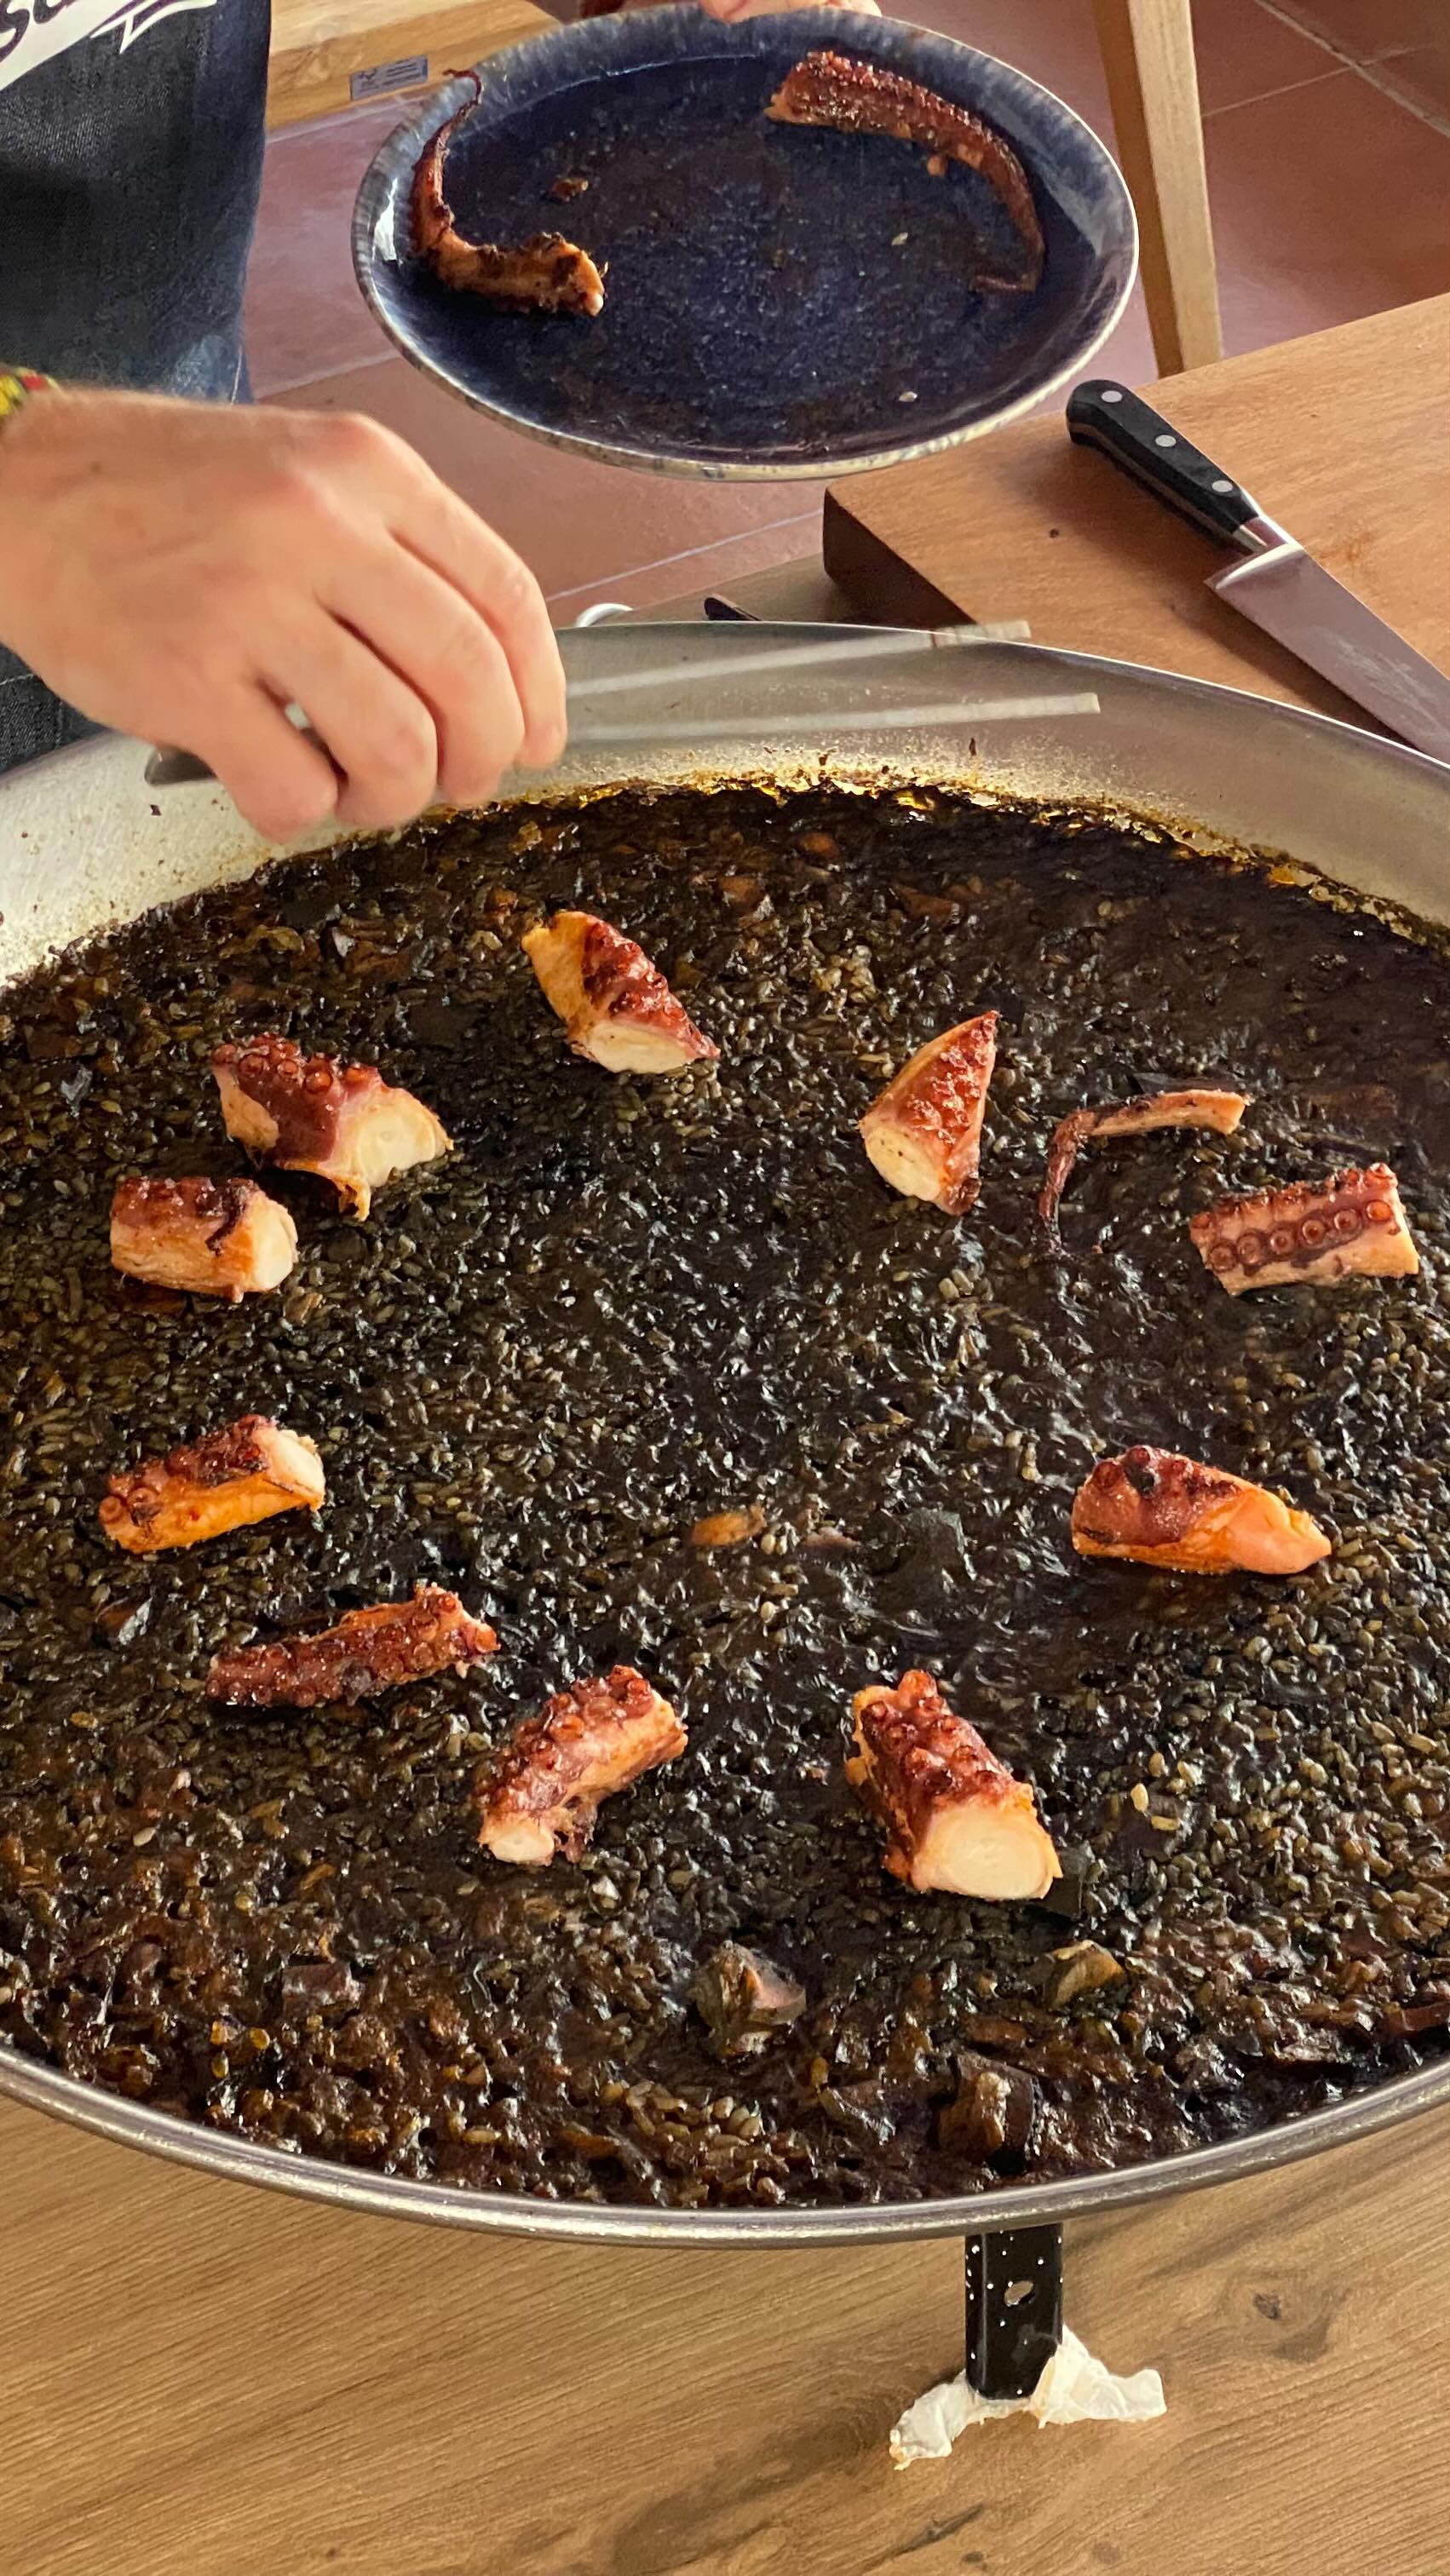 🥘 PAELLA DE CALAMARES DE LATA 🥘 
.
Guárdate esta receta como homenaje al mejor cocinero del mundo #thebestchefsoftheworld @dabizdiverxo.
.
Con pocos ingredientes un resultado espectacular!
.
Si te ha gustado, comenta conque la harías tú!
.
SÍGUEME para más recetas como esta! 
.
#paella #pulpo #cocinacasera #cocinasaludable #chef #food #spanishfood